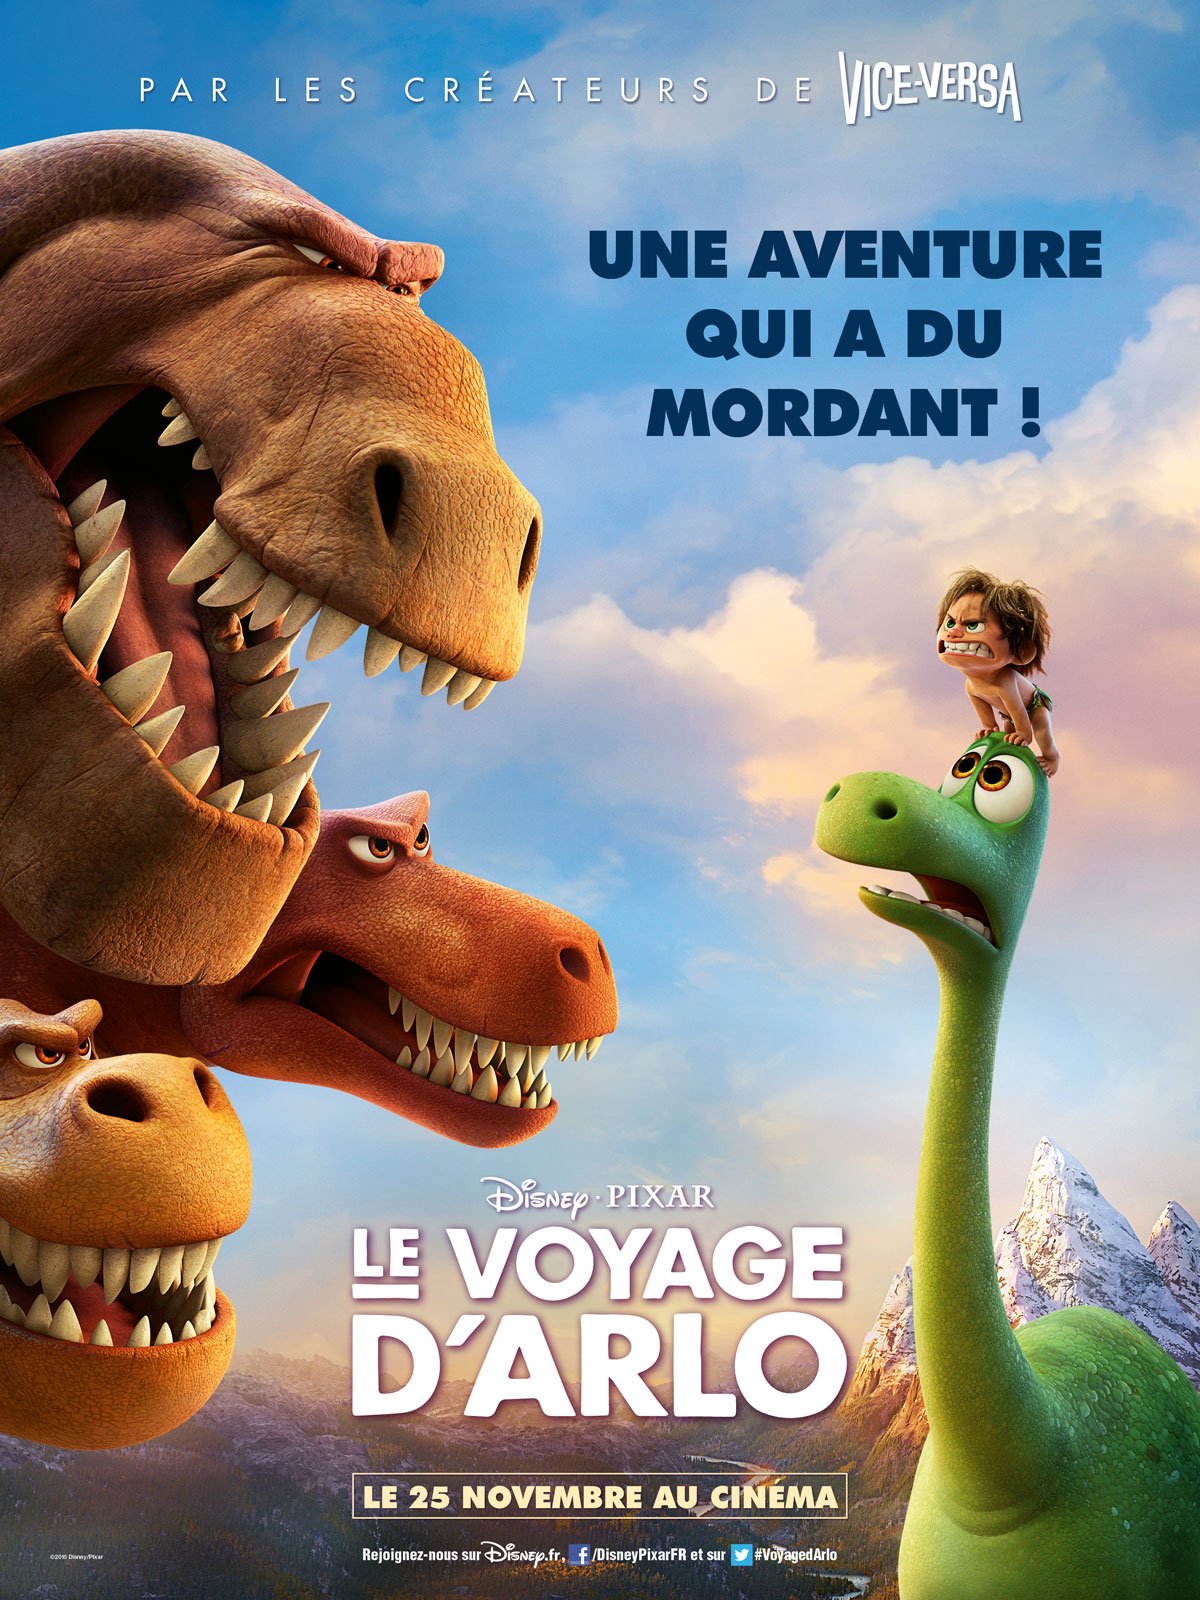 Le Voyage d'Arlo - Pixar ©